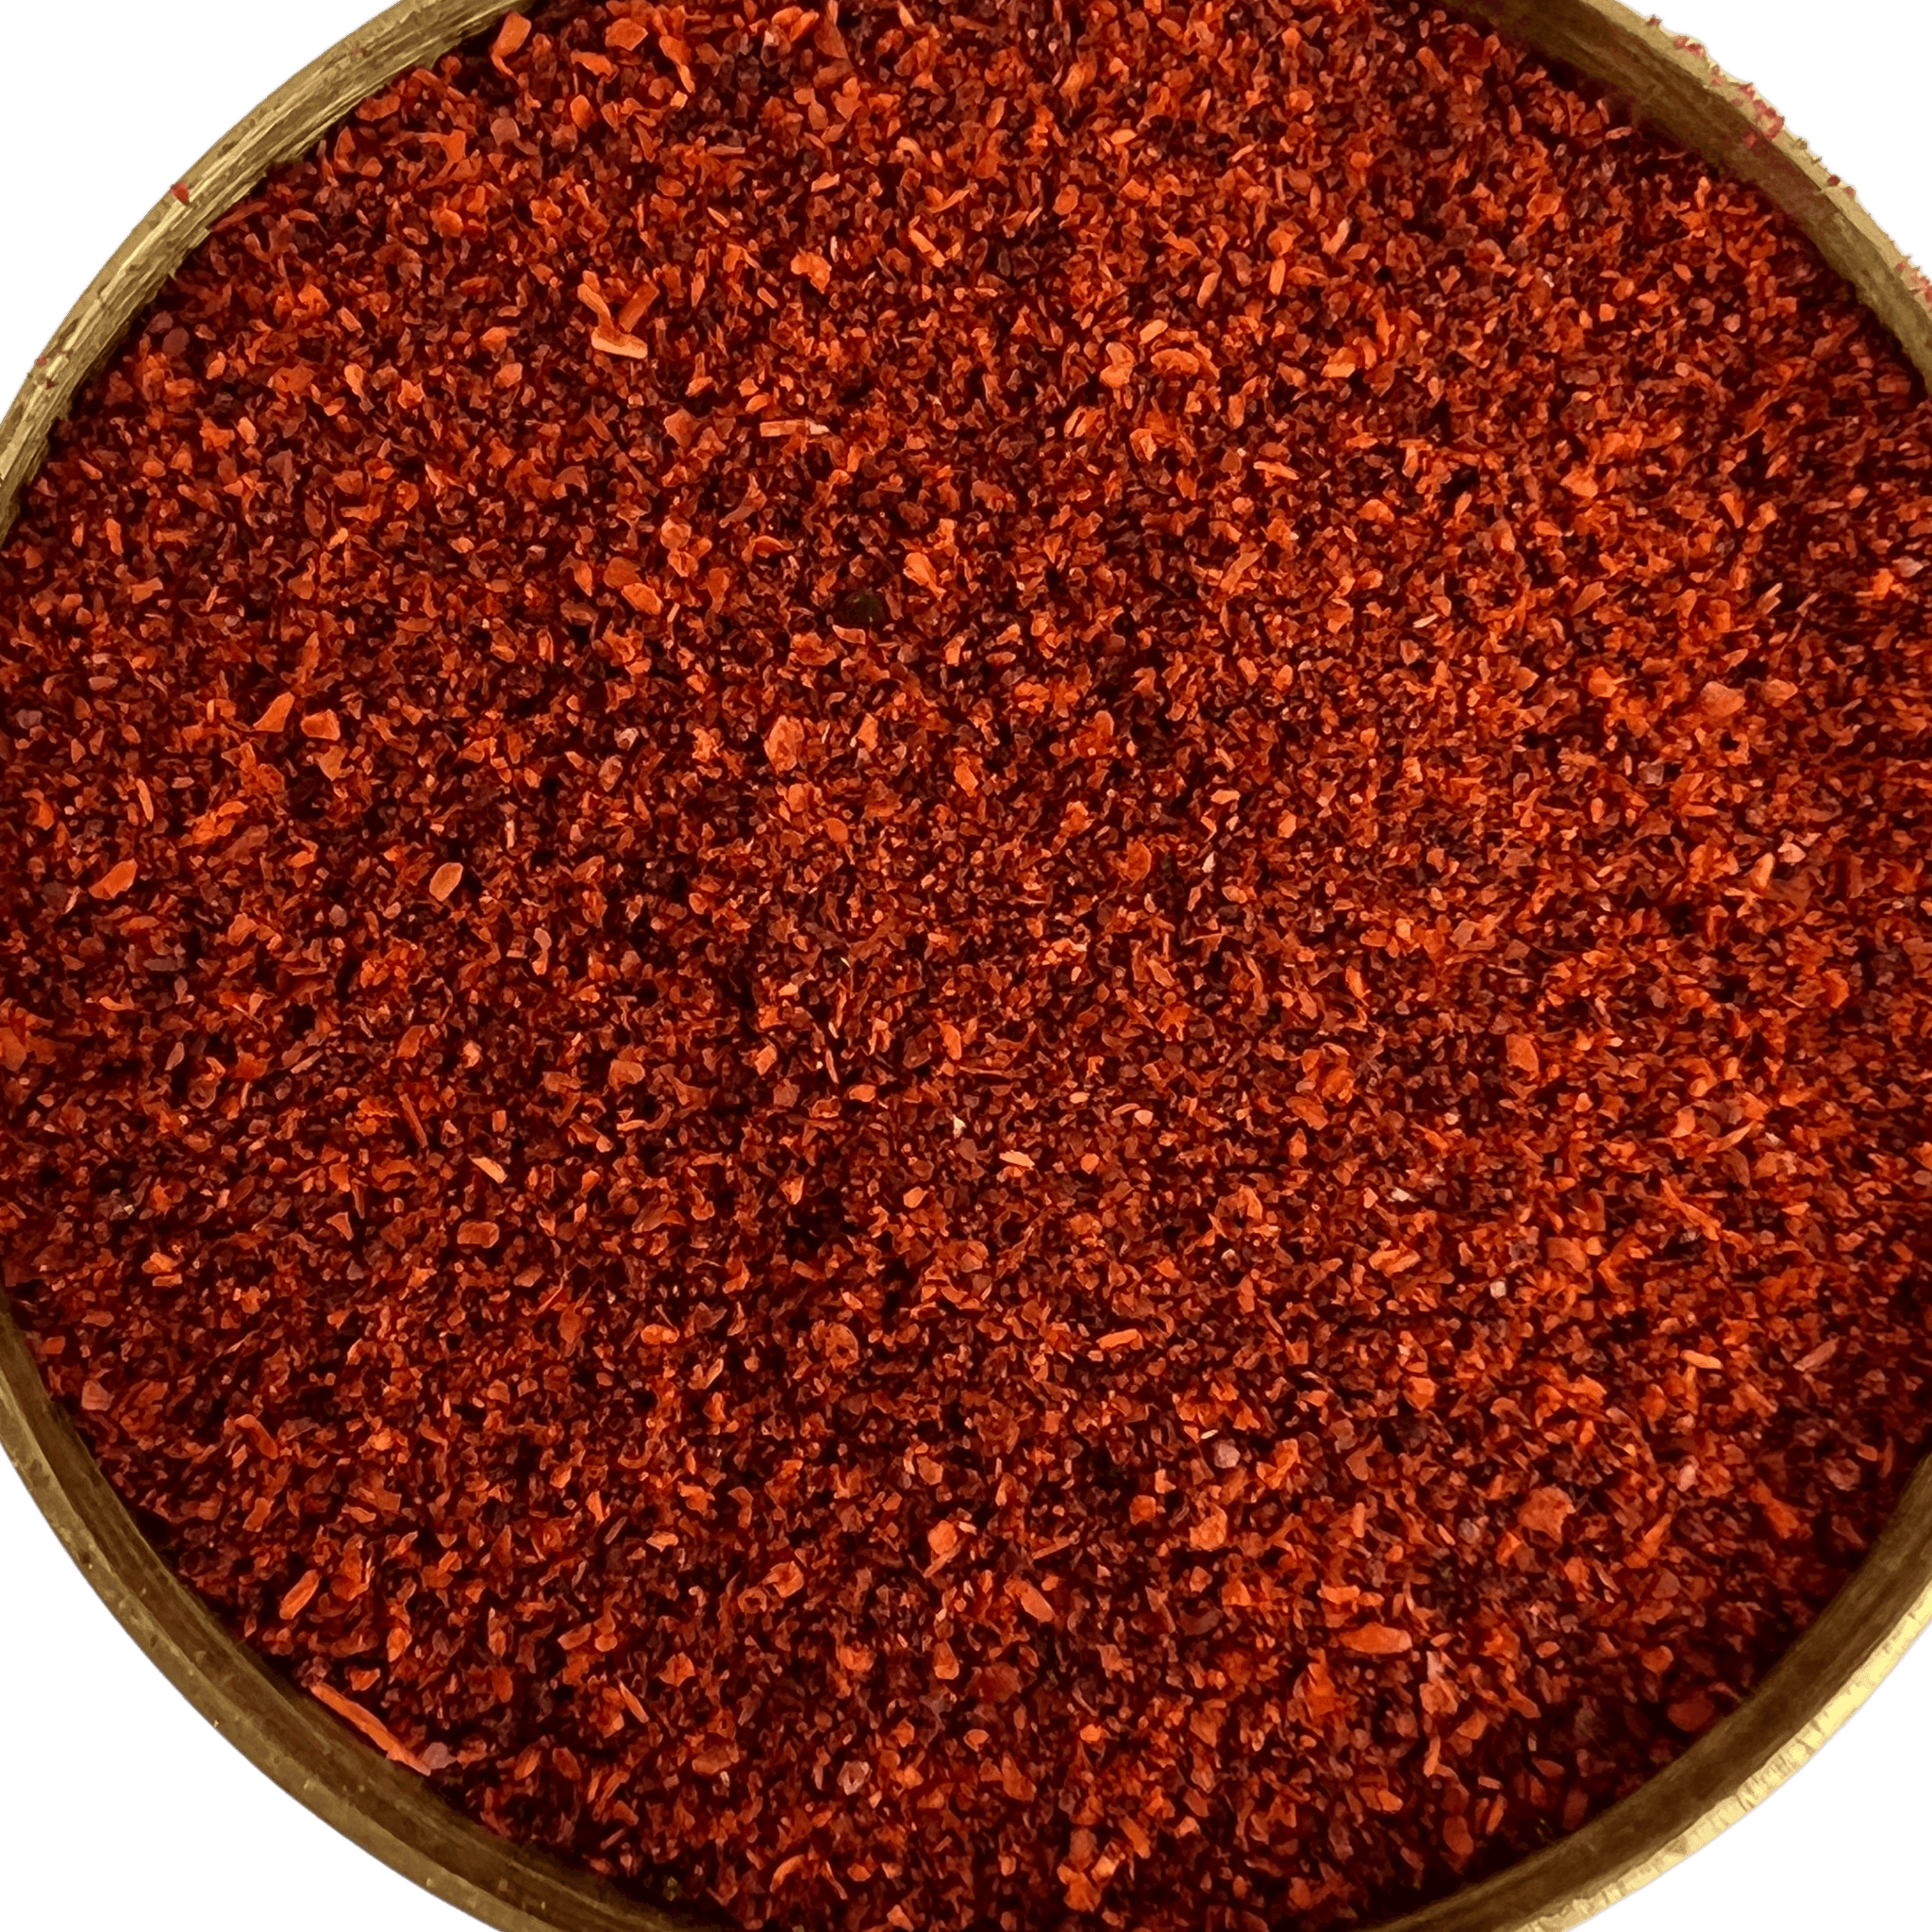 Afghan Paprika, Smoked